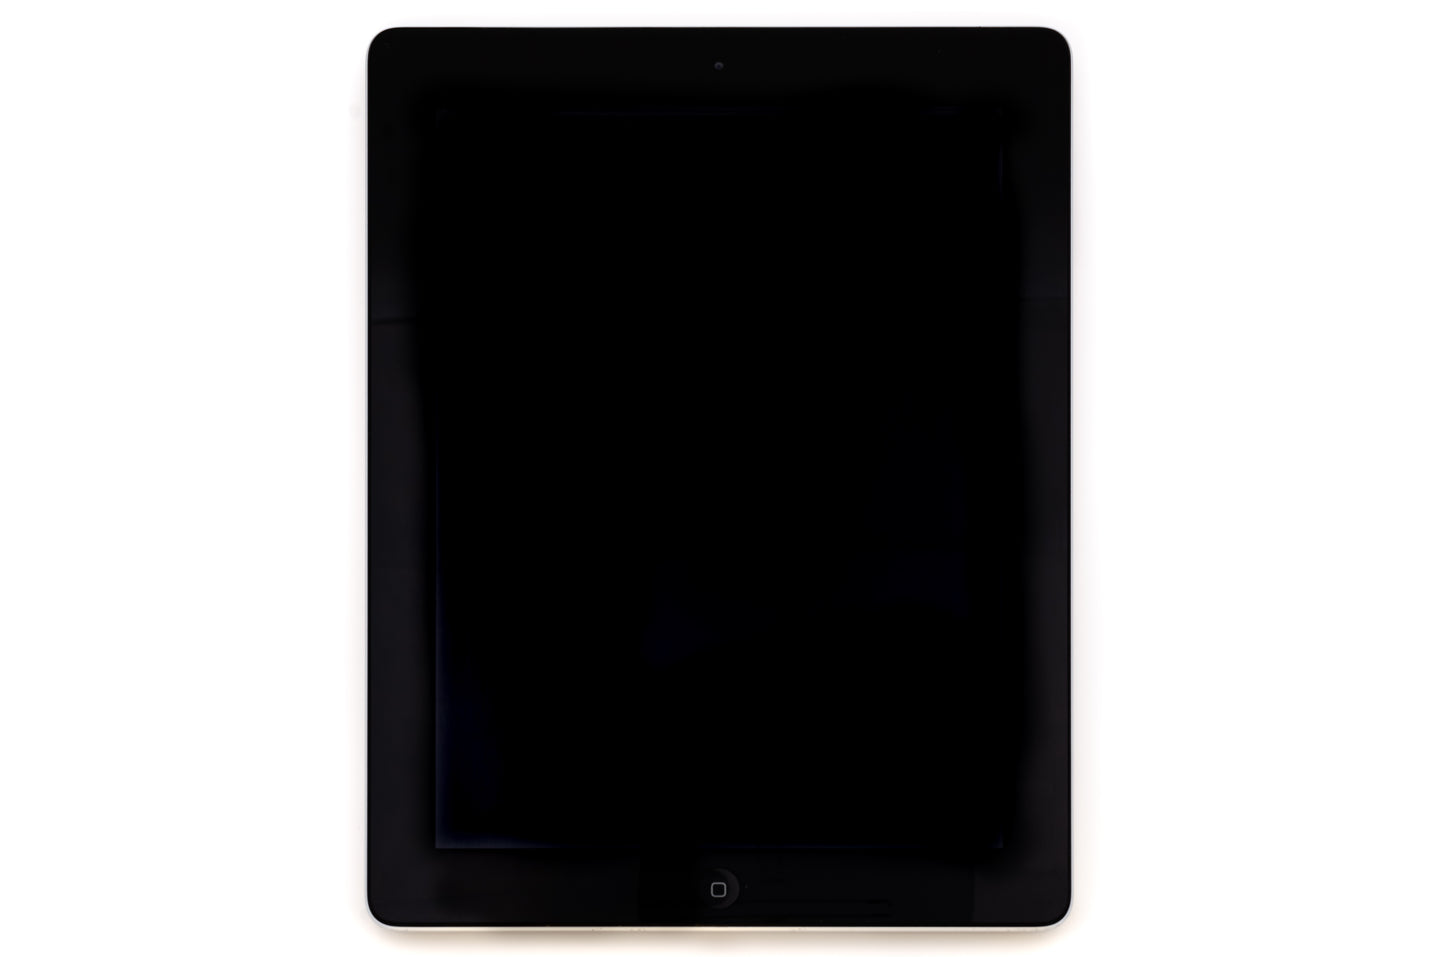 apple-2012-9.7-inch-ipad-4-a1458-silver/black-2